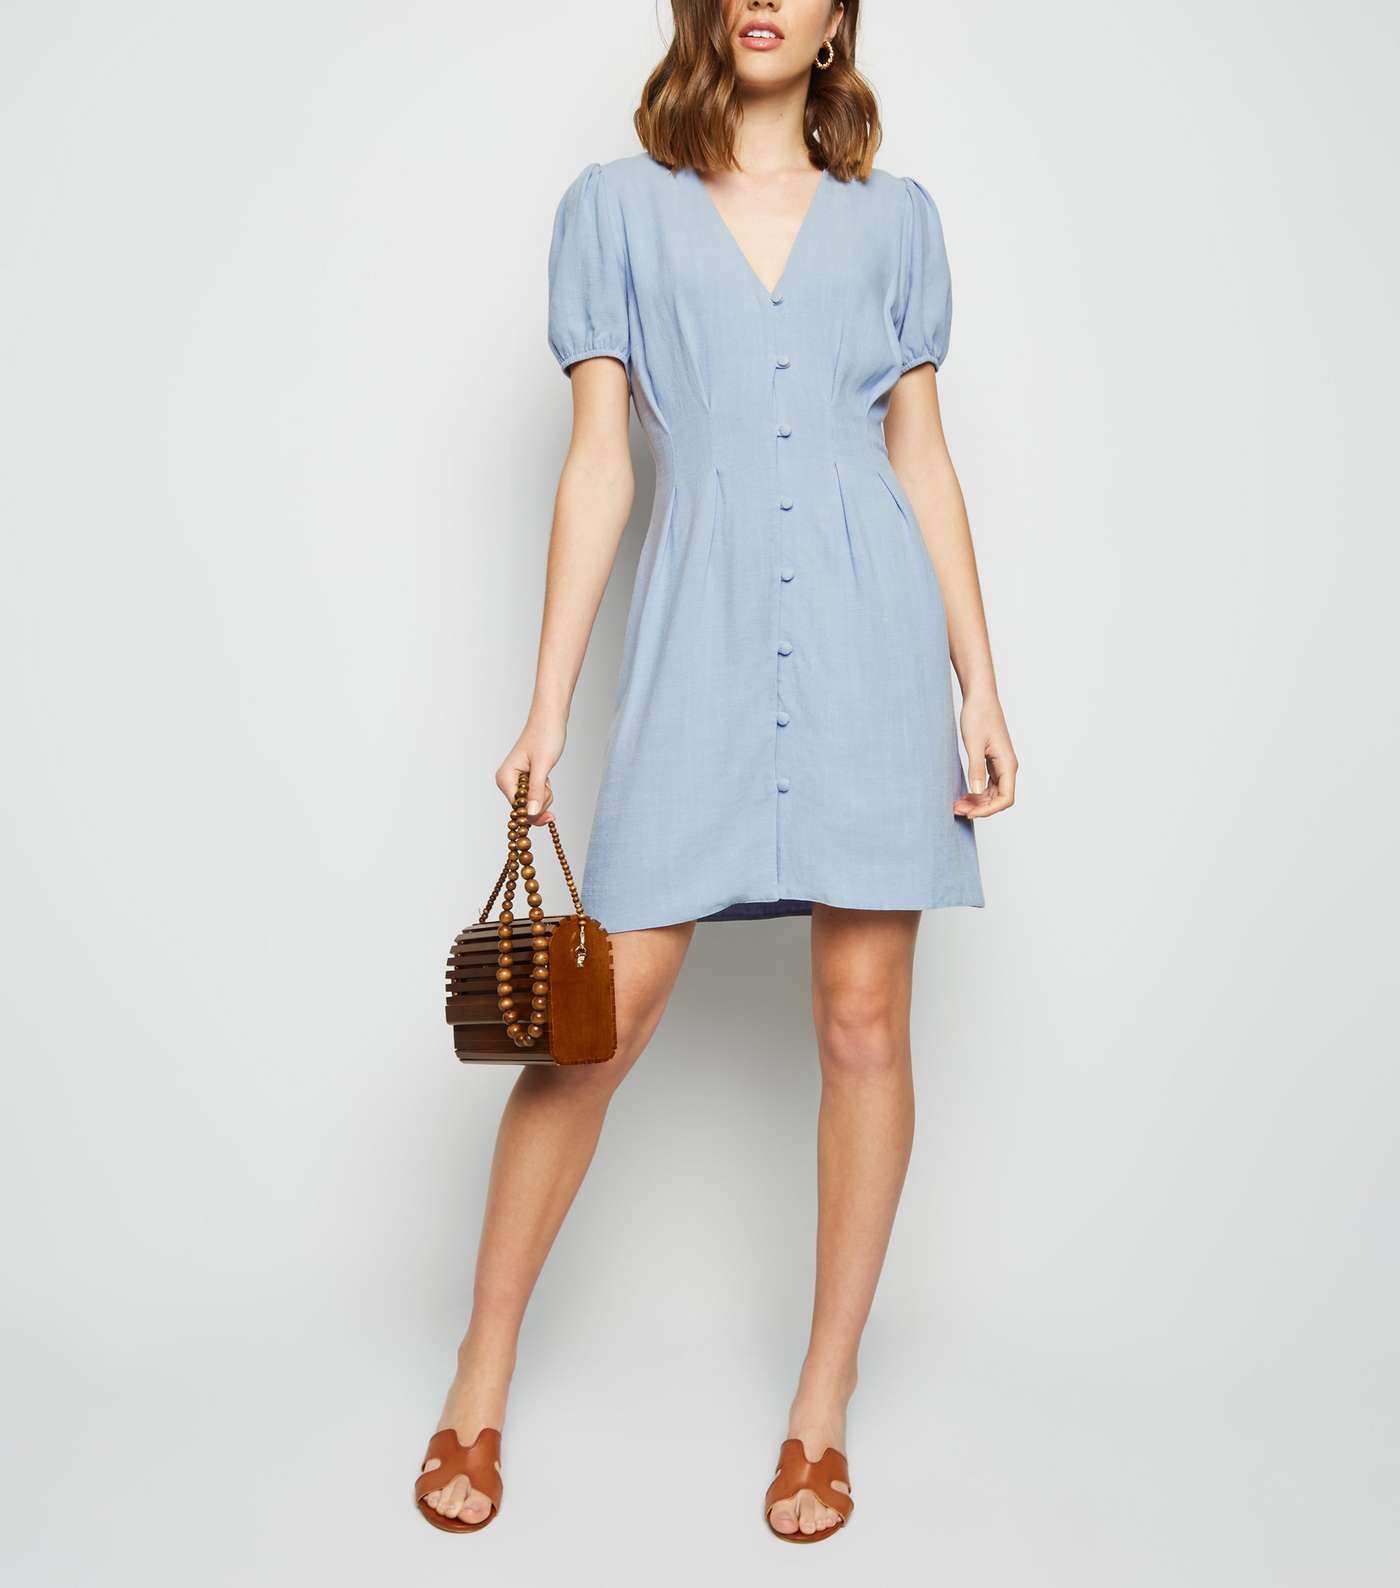 Blue Linen-Look Button Up Tea Dress Image 2